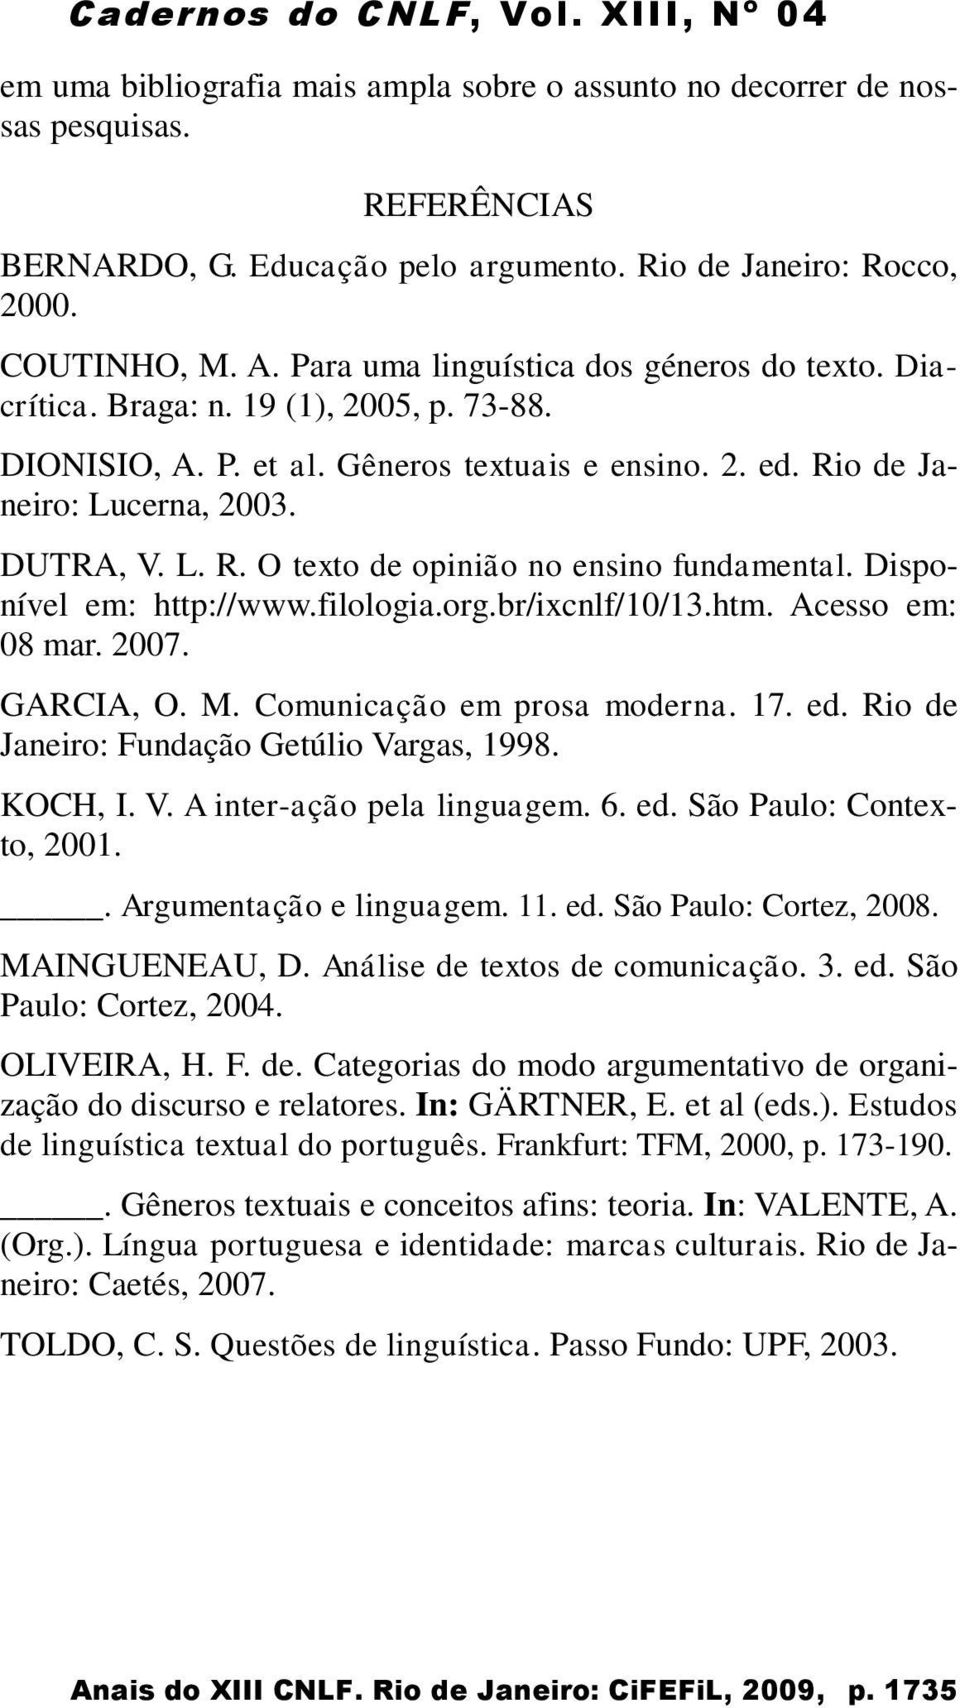 Disponível em: http://www.filologia.org.br/ixcnlf/10/13.htm. Acesso em: 08 mar. 2007. GARCIA, O. M. Comunicação em prosa moderna. 17. ed. Rio de Janeiro: Fundação Getúlio Va